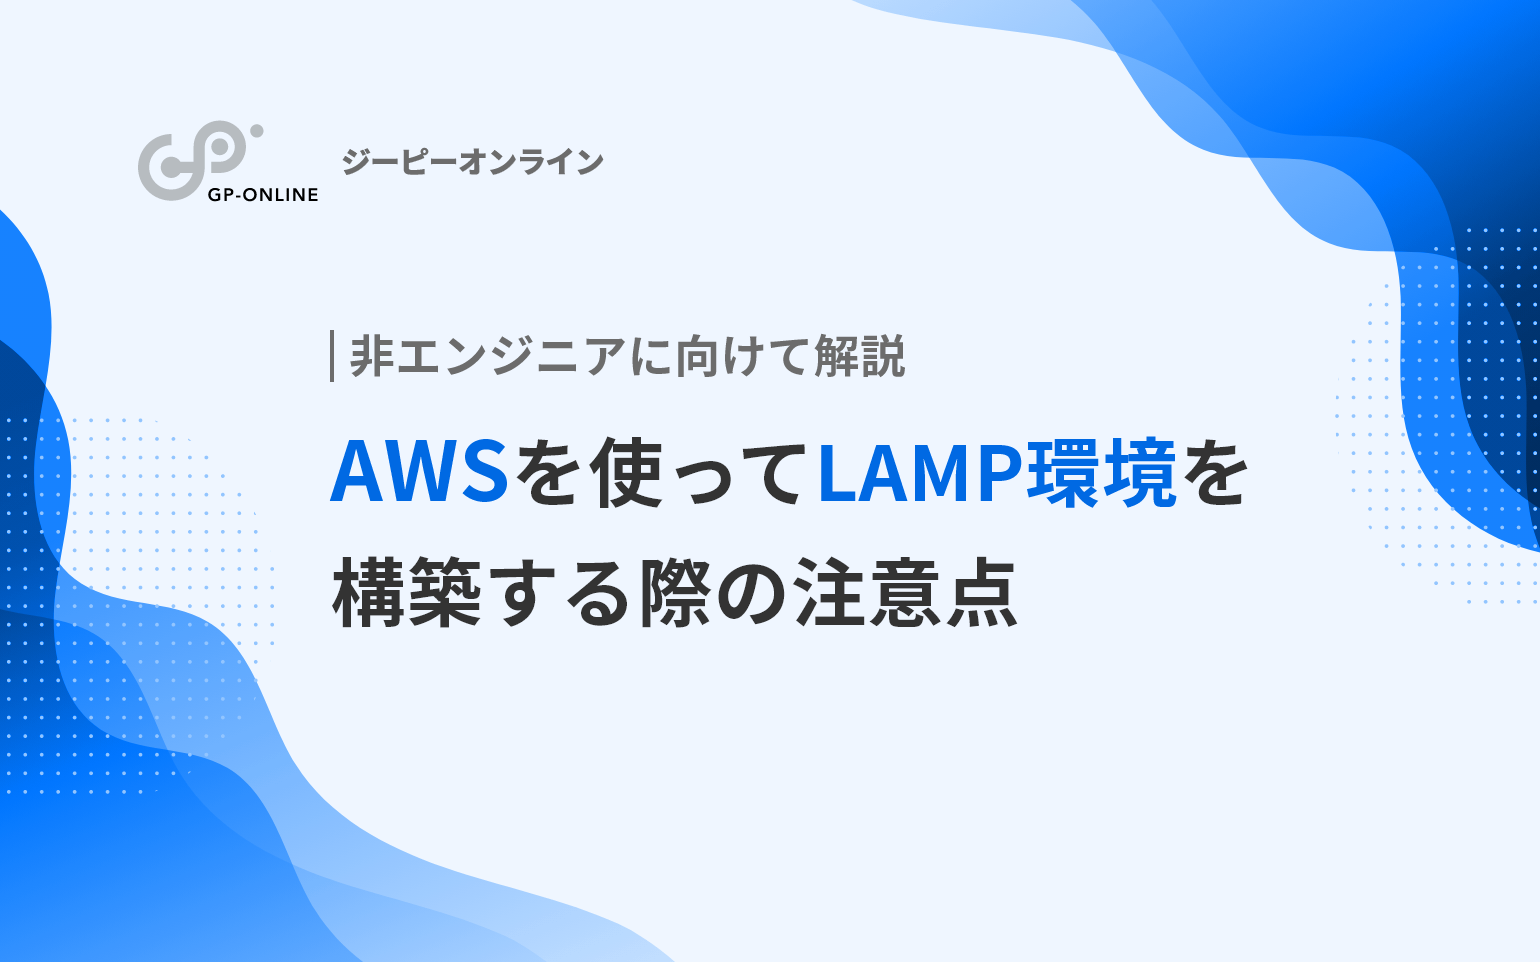 AWSを使ってWebサイト（LAMP環境）を構築する際の注意点を解説